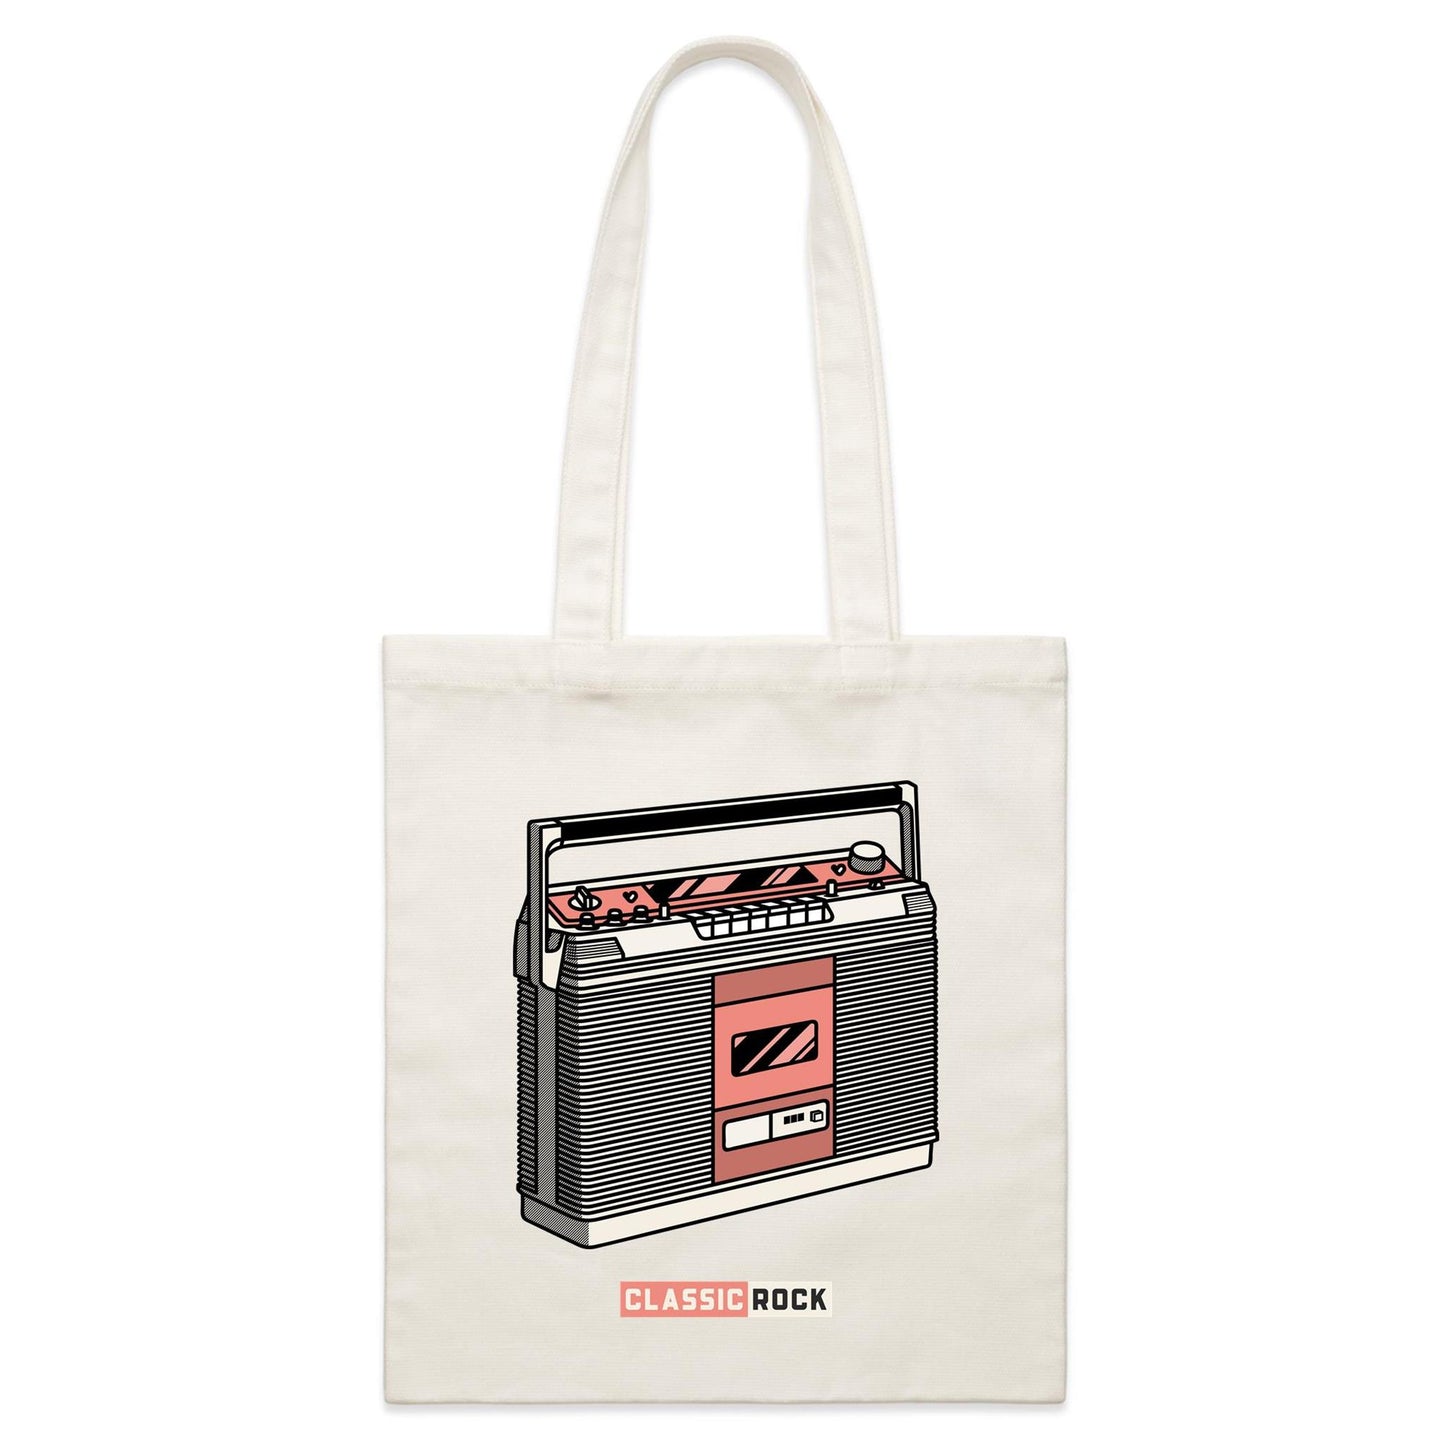 Classic Rock - Parcel Canvas Tote Bag Default Title Parcel Tote Bag